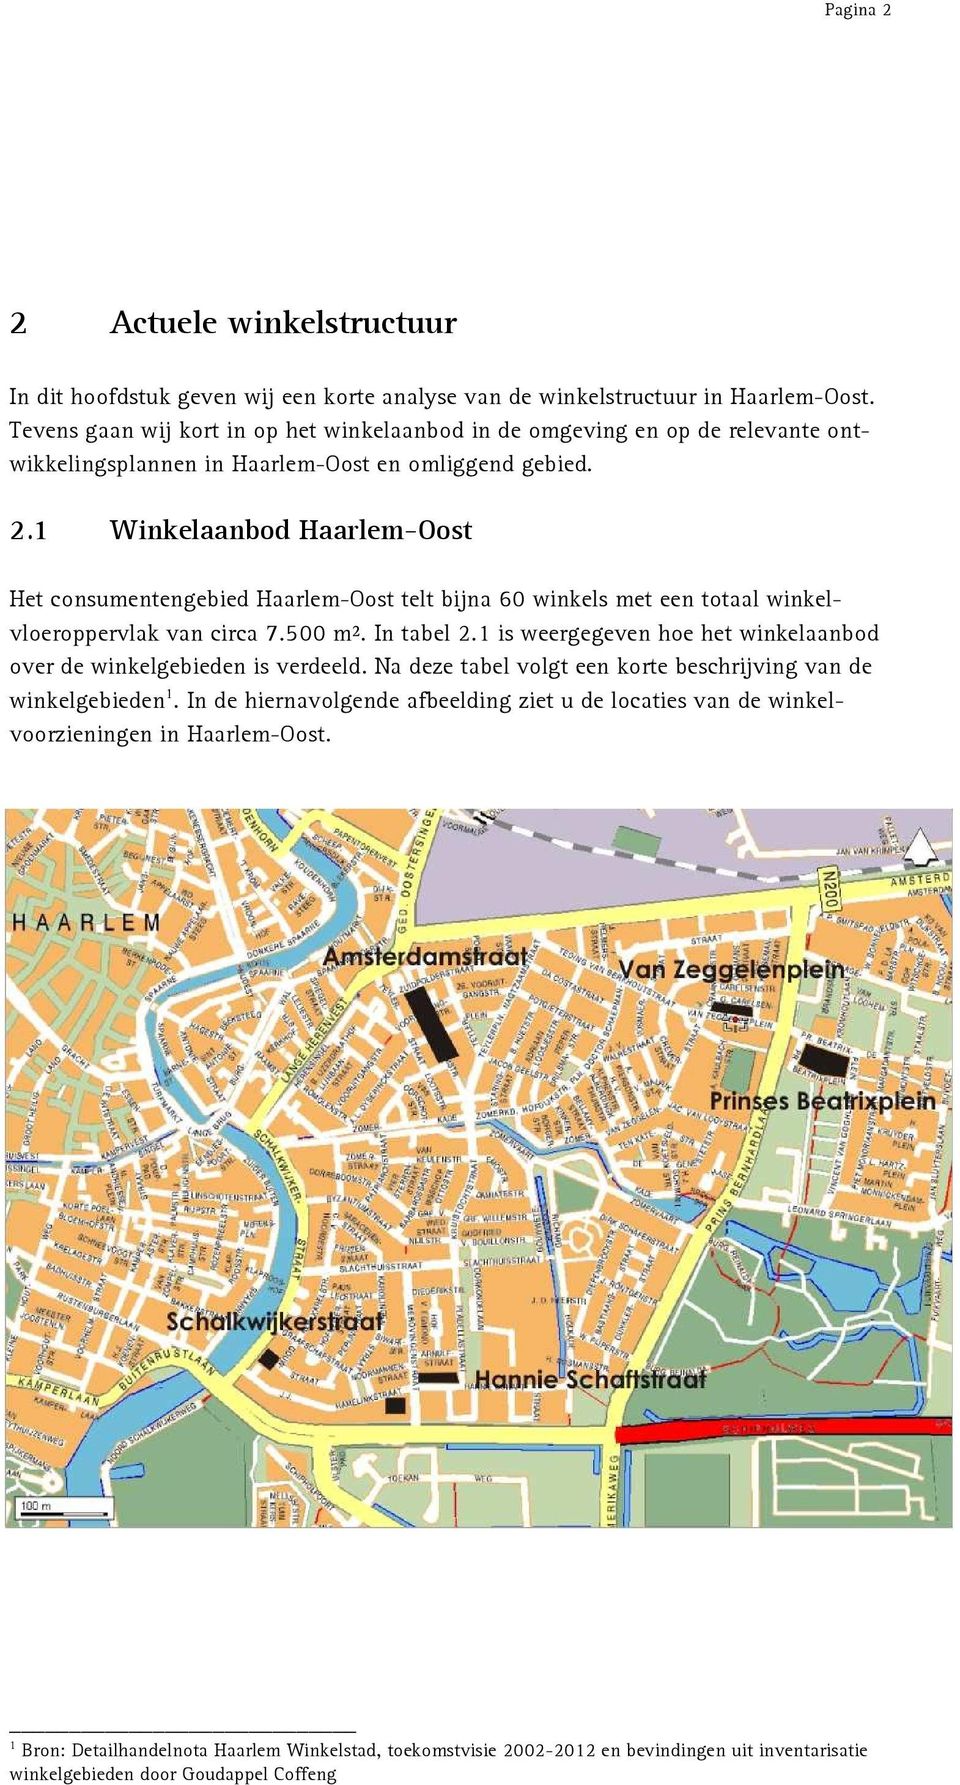 1 Winkelaanbod Haarlem-Oost Het consumentengebied Haarlem-Oost telt bijna 60 winkels met een totaal winkelvloeroppervlak van circa 7.500 m². In tabel 2.